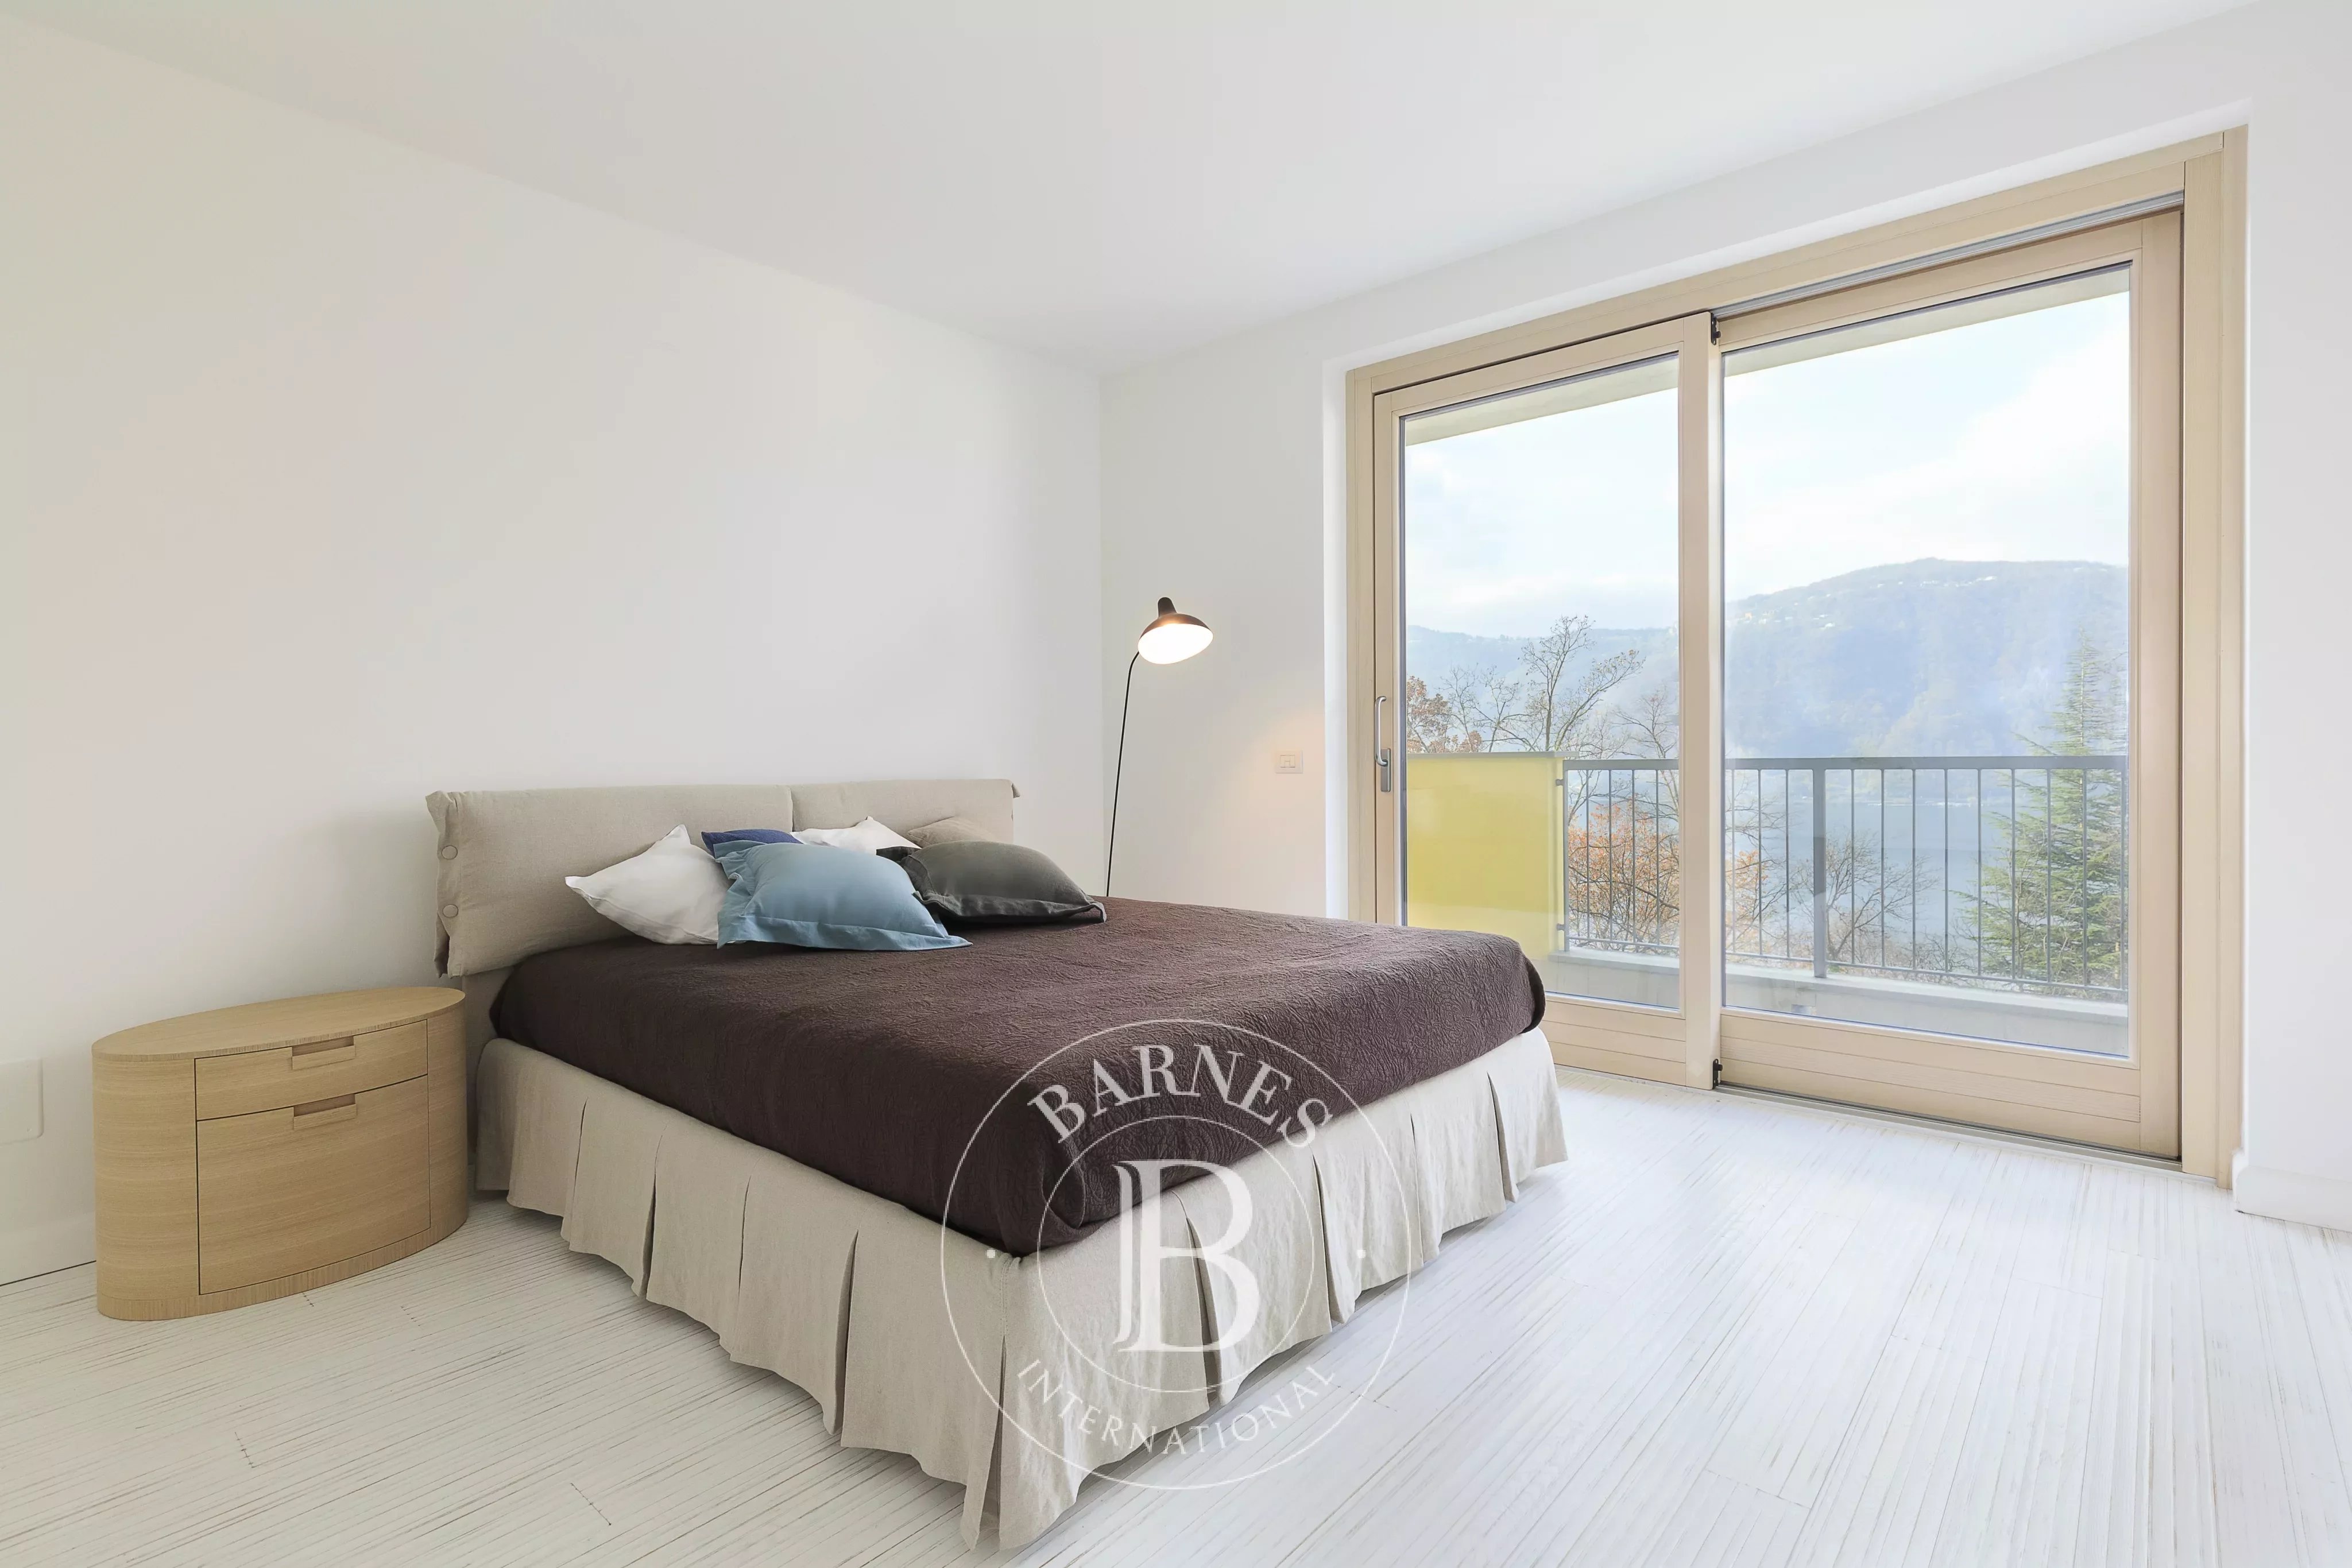 Duplex multi-room apartment in Campione D'Italia - picture 15 title=